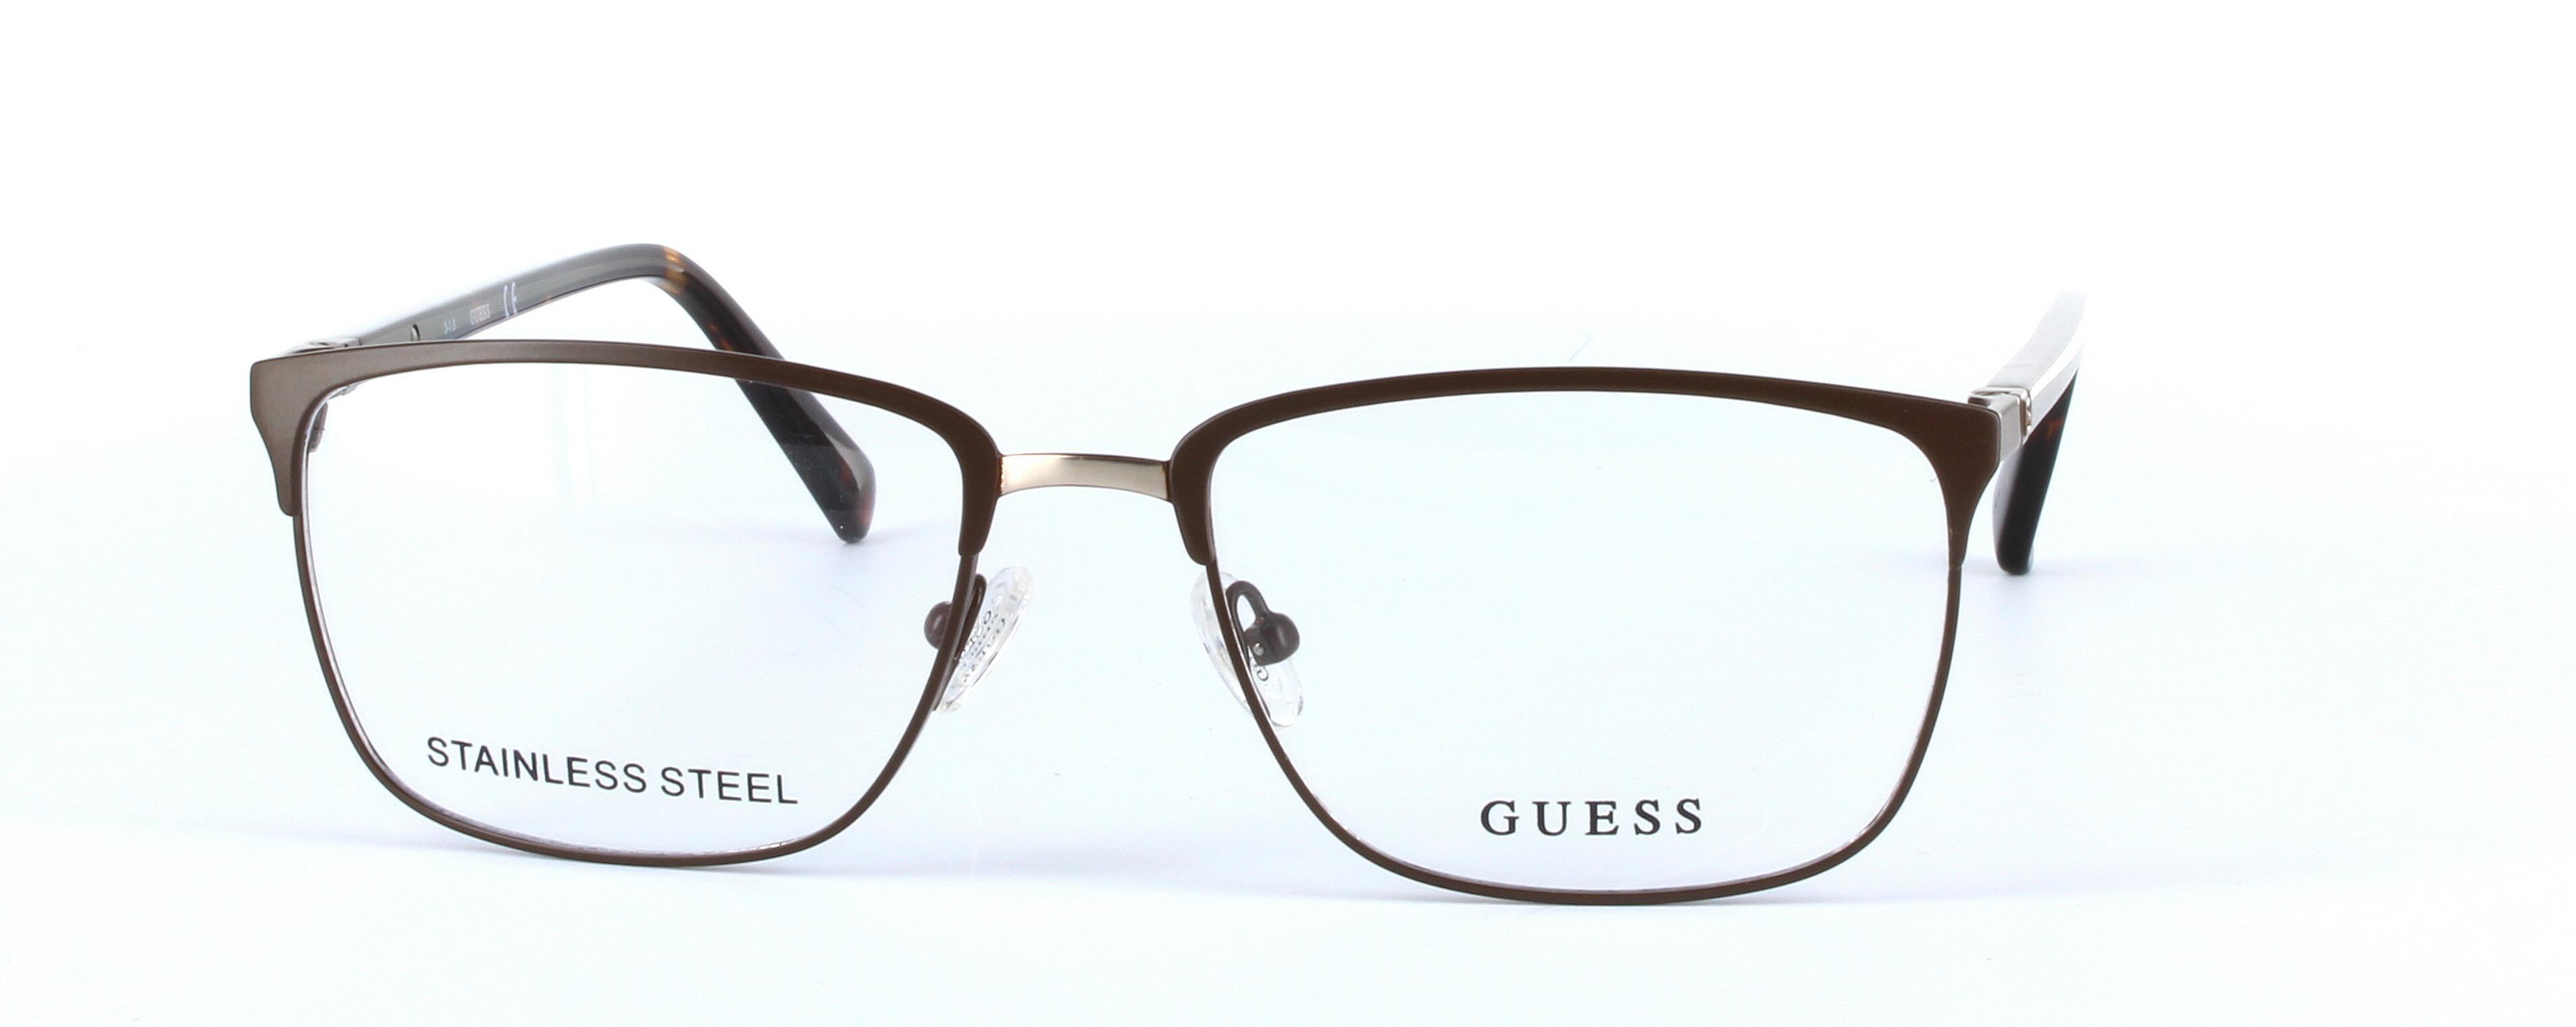 GUESS (GU1890-049) Brown Full Rim Oval Rectangular Metal Glasses - Image View 5